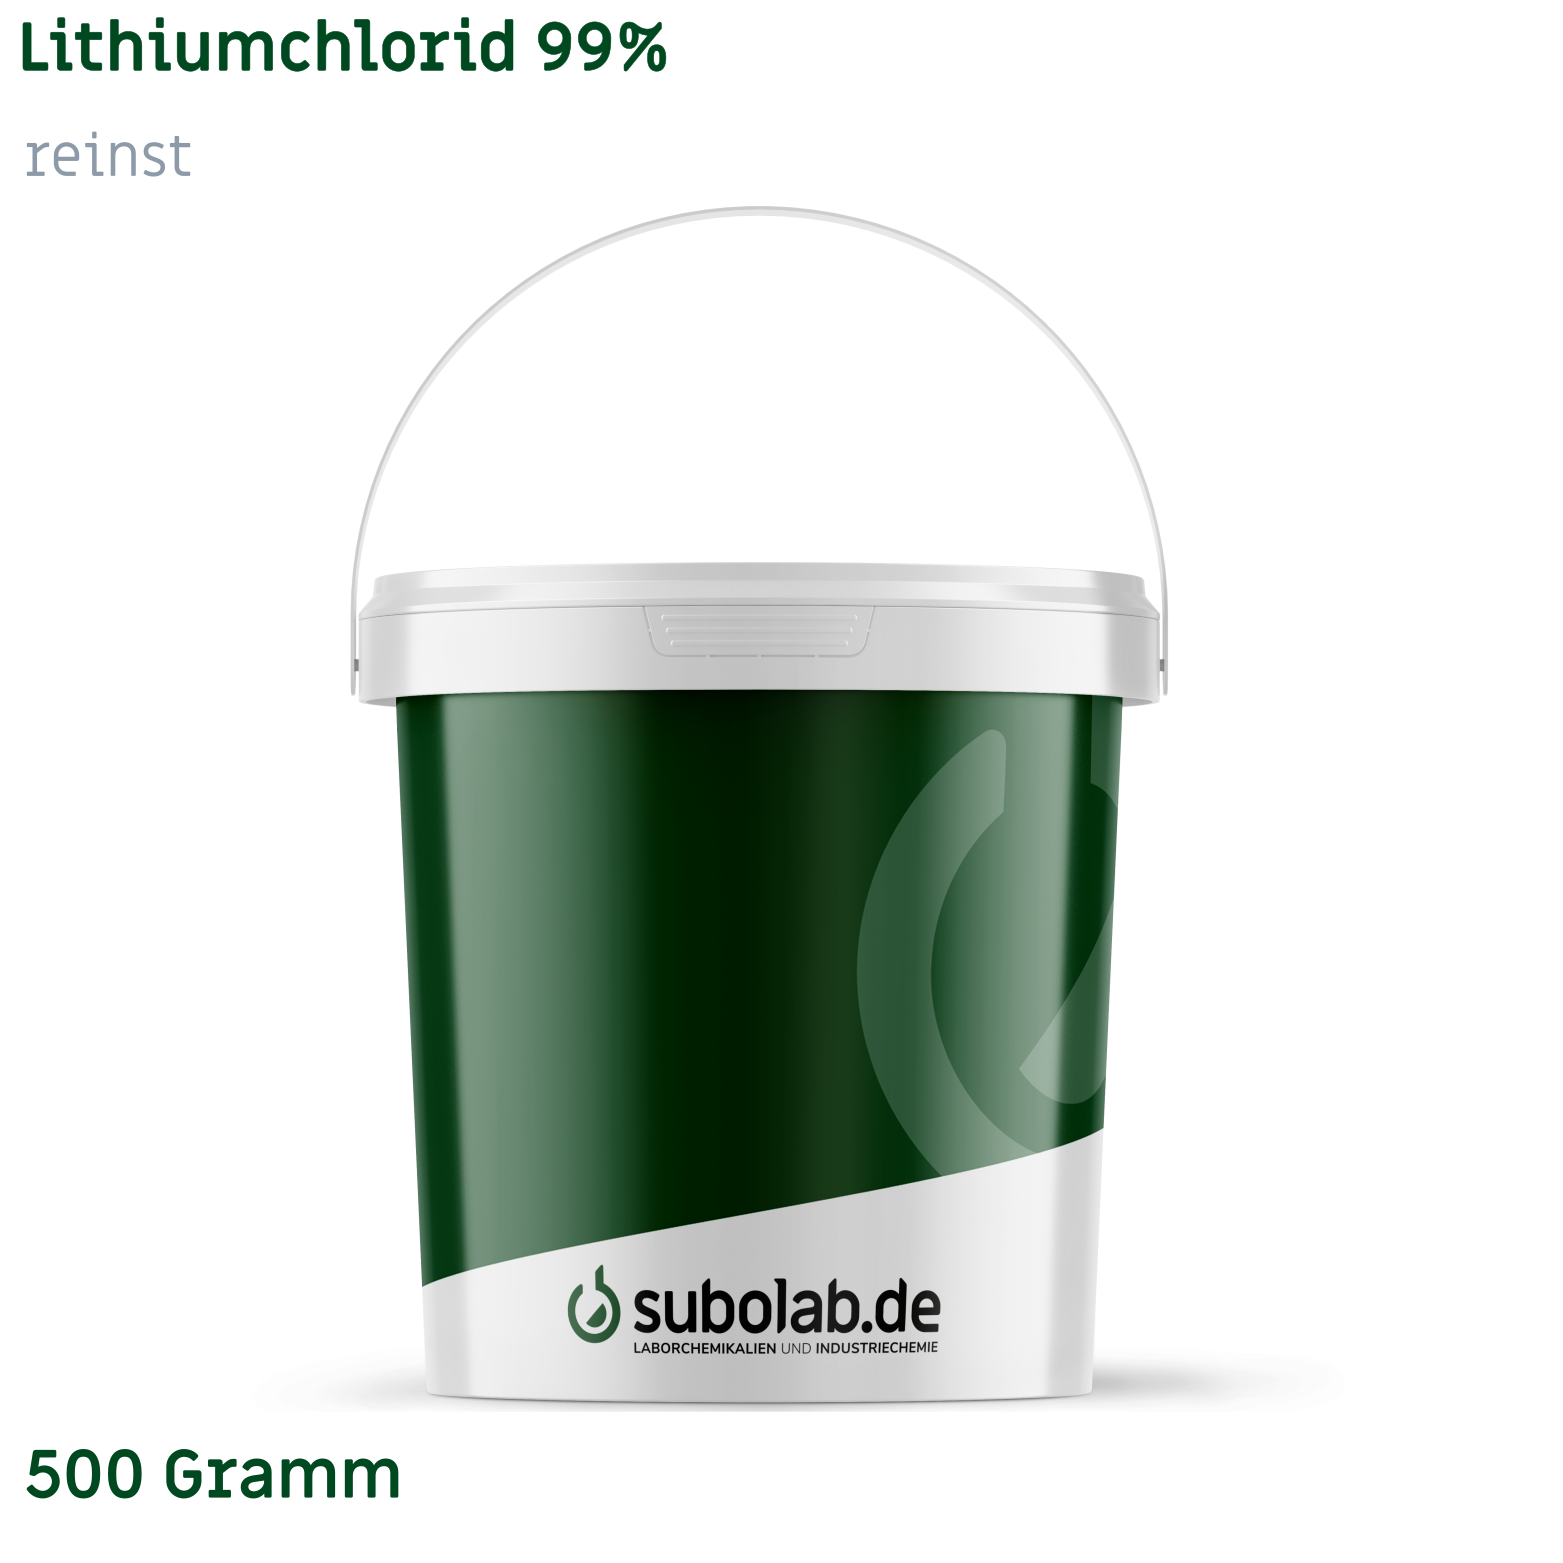 Bild von Lithiumchlorid 99% reinst (500 Gramm)